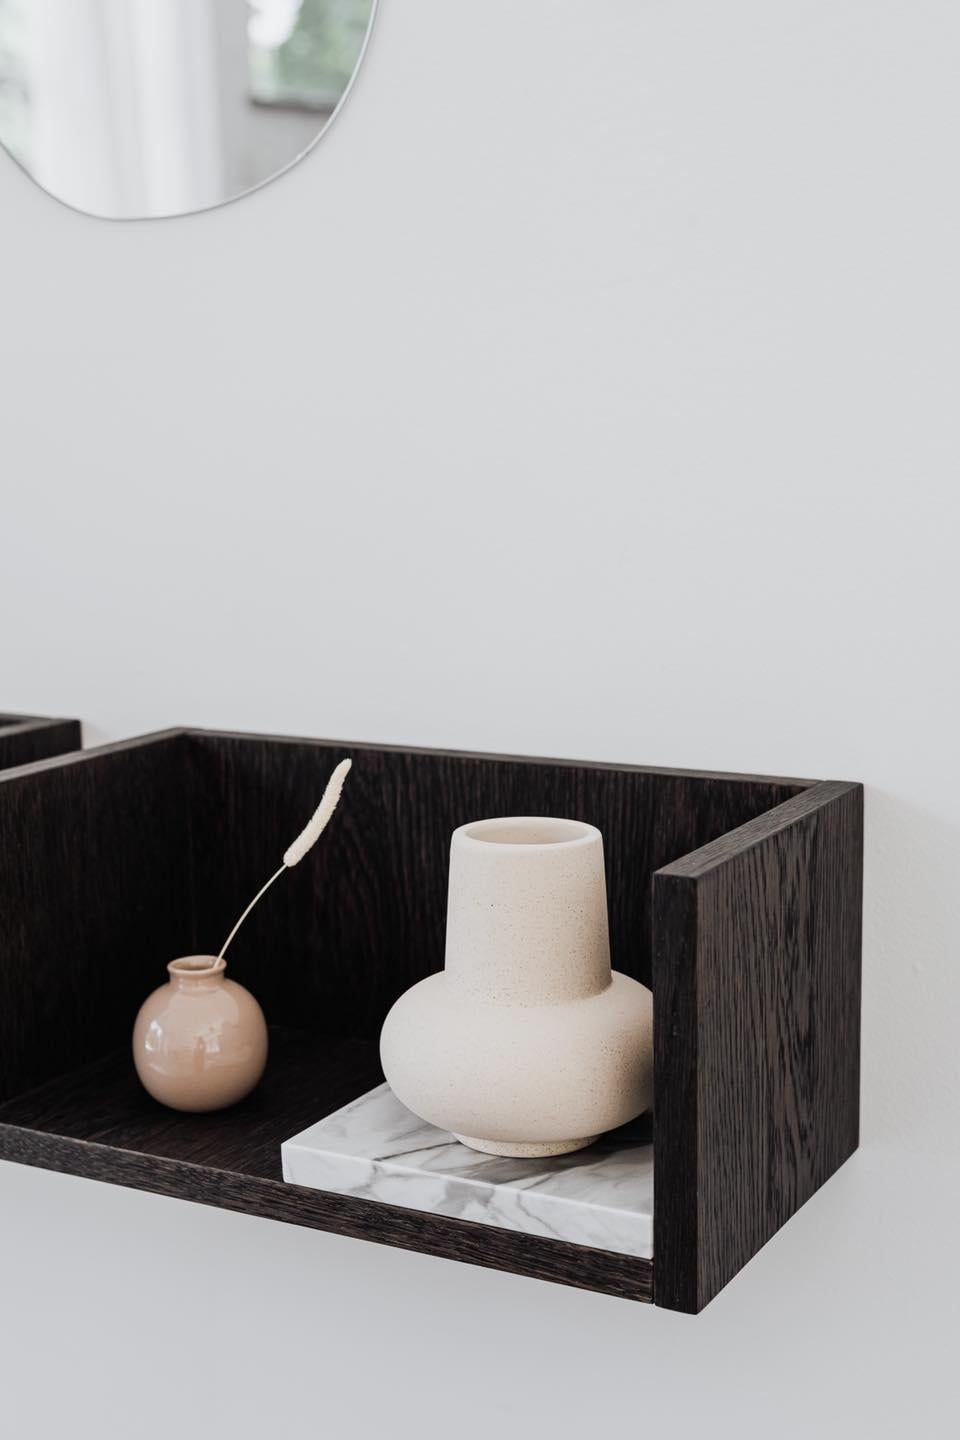 FORST SHELF ist ein minimalistisches Wandregal. Der perfekte Platz für ein Buch, eine Kerze oder eine Vase - all die kleinen Gegenstände, die Sie täglich benutzen, oder Ihre Lieblingserinnerungsstücke. Jedes Regal ist mit einem Marmortablett